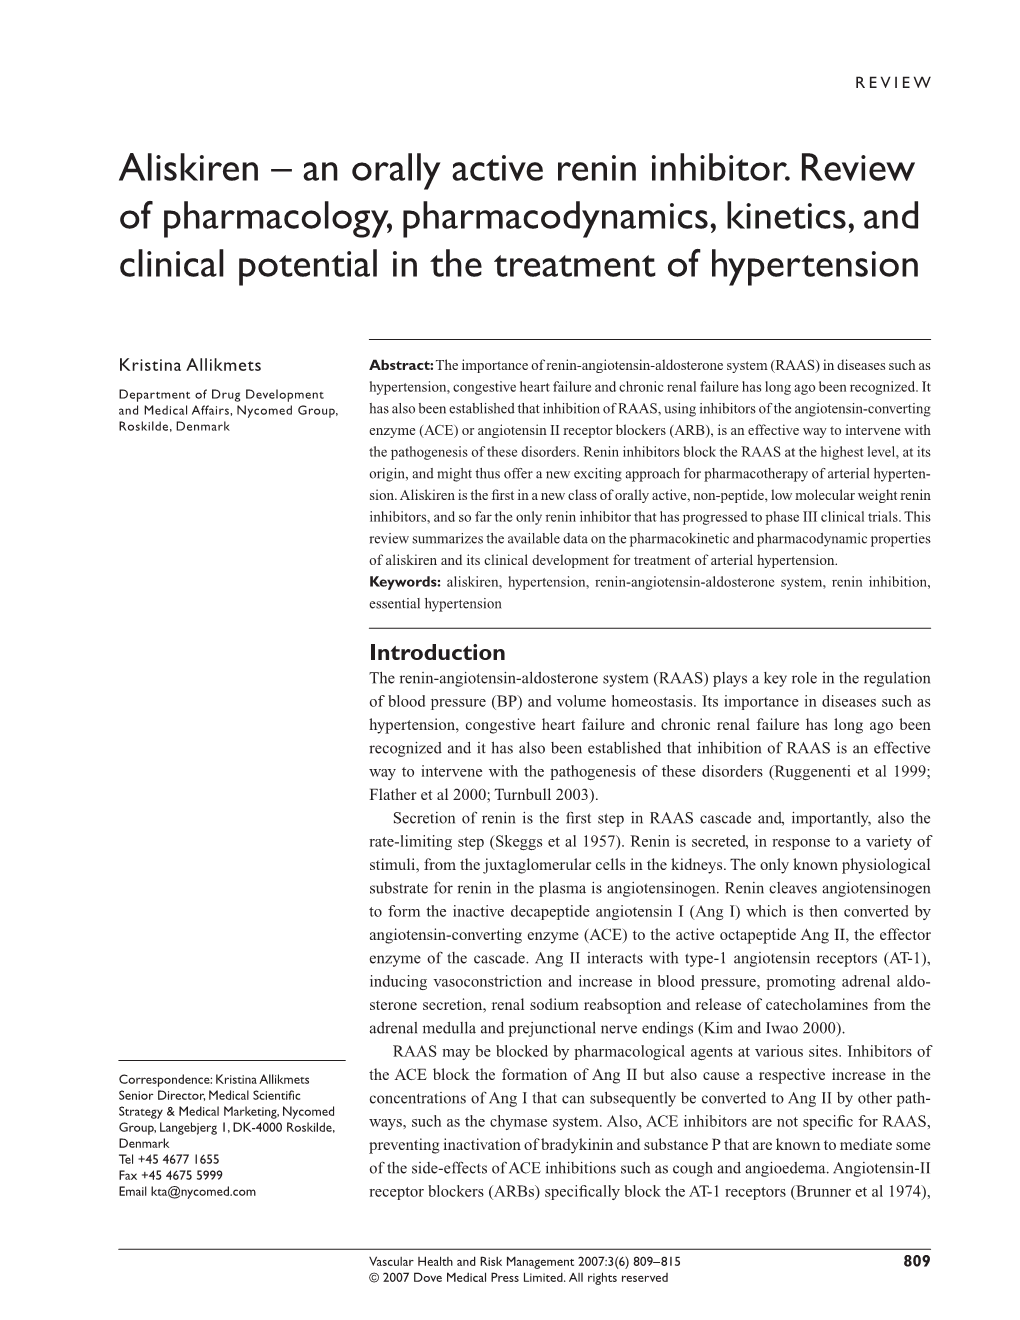 Aliskiren – an Orally Active Renin Inhibitor